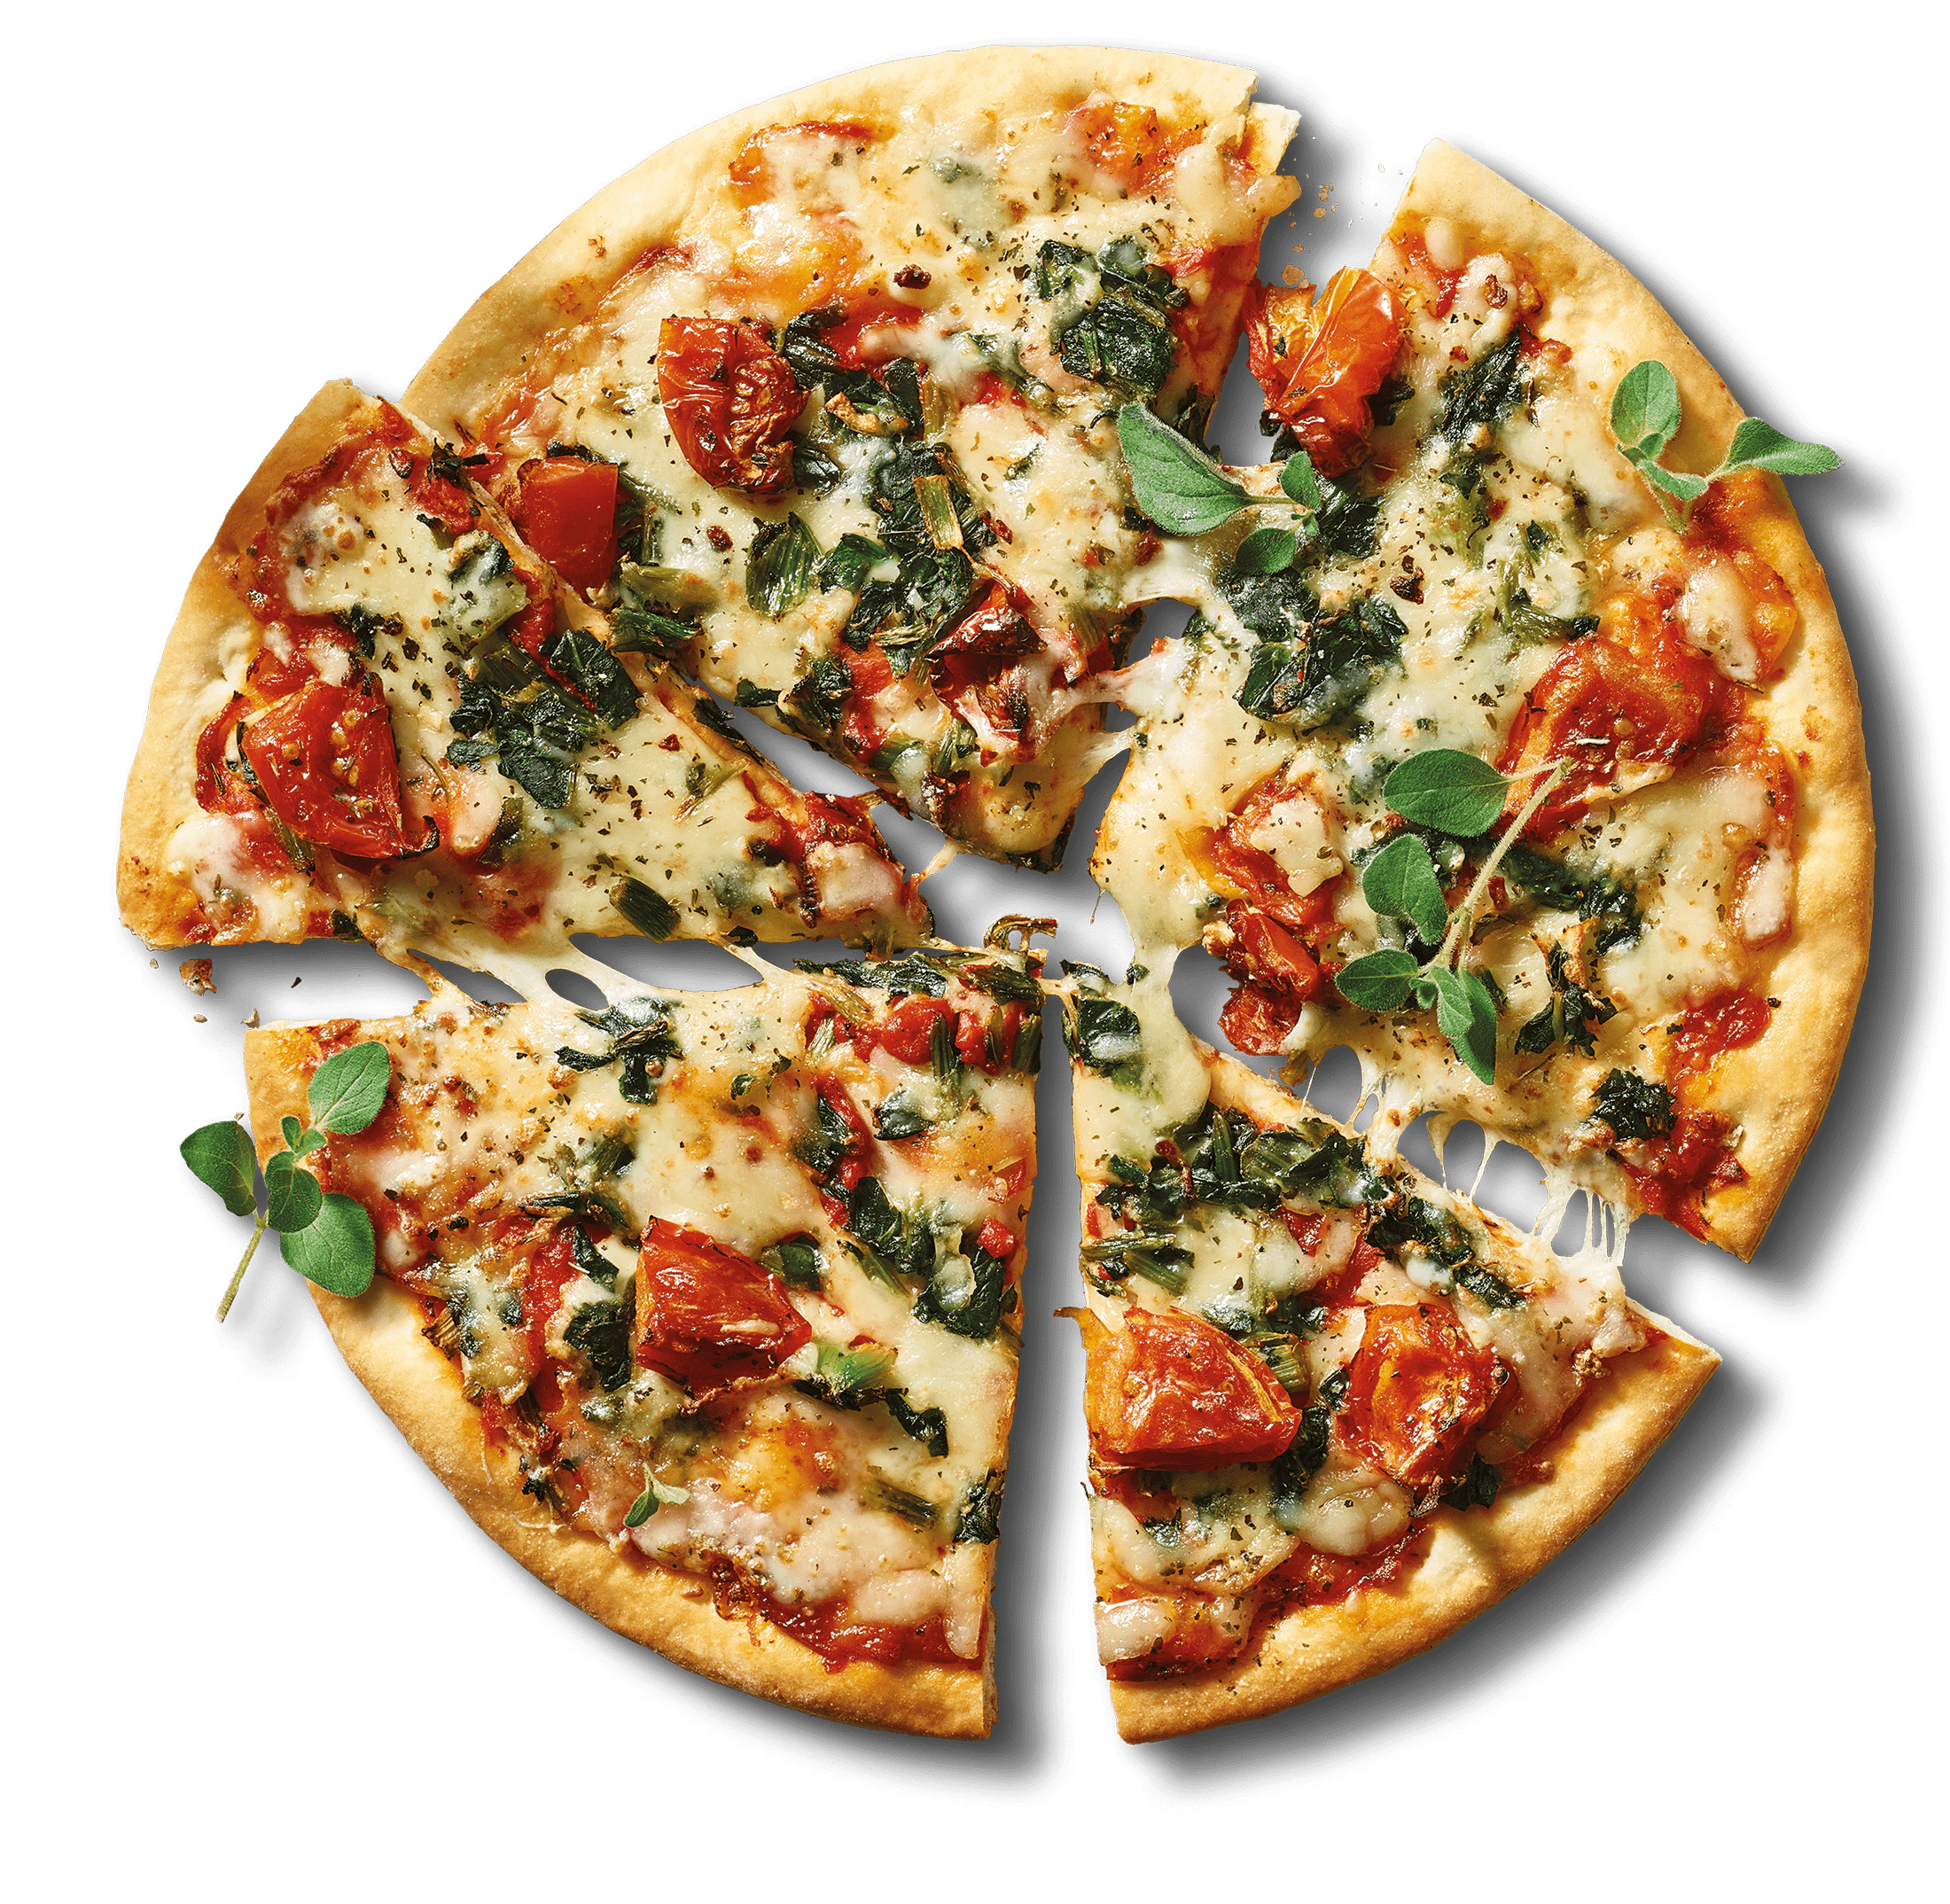 Spinach & Mozzarella Pizza Photo